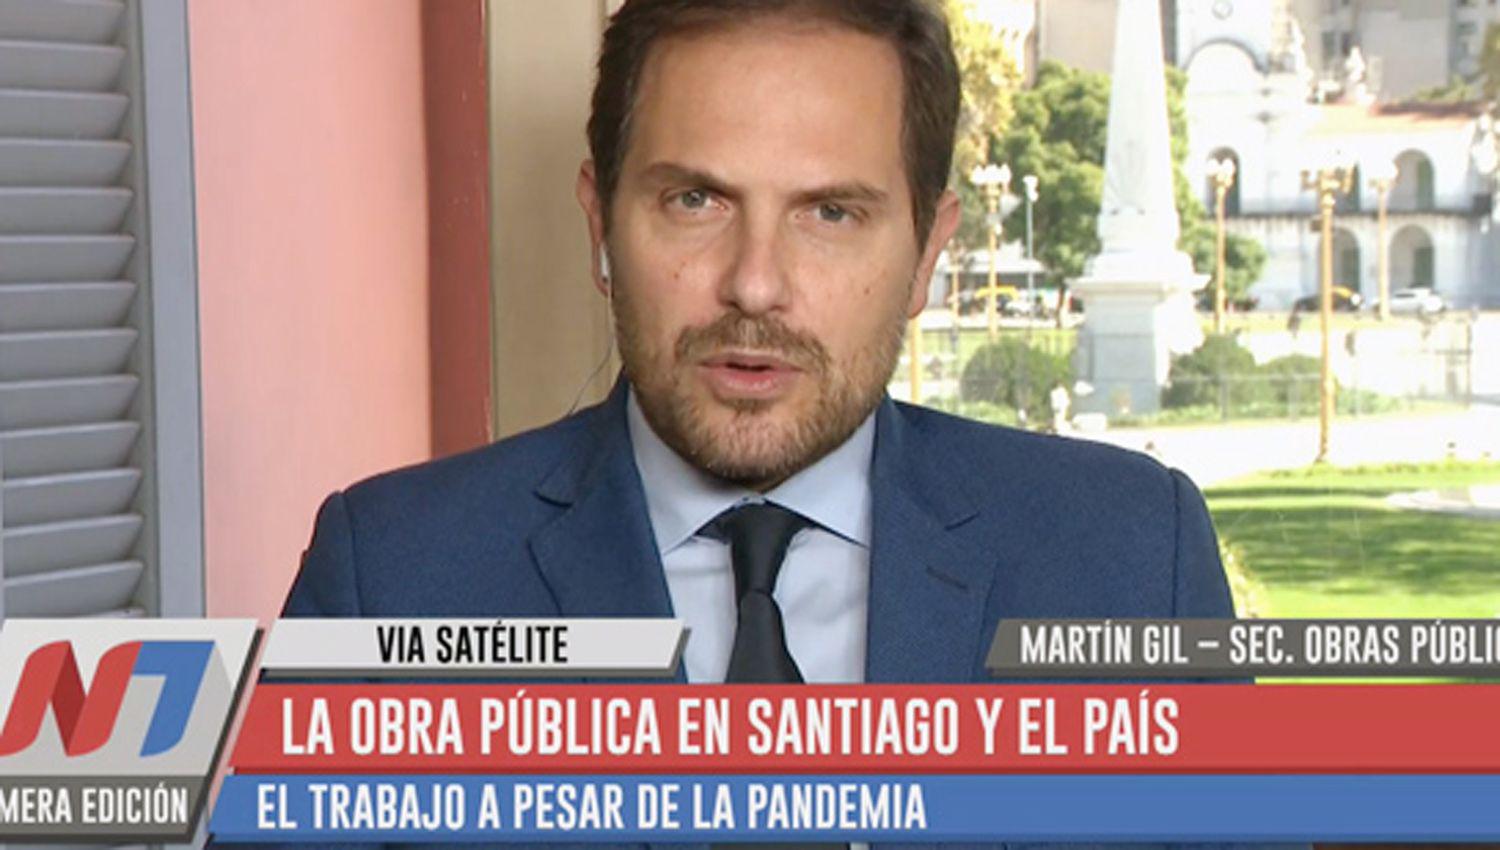 El secretario de Obras P�blicas de la Nación Martín Gill
detalló el plan para poner de pie a la Argentina en la pospandemia